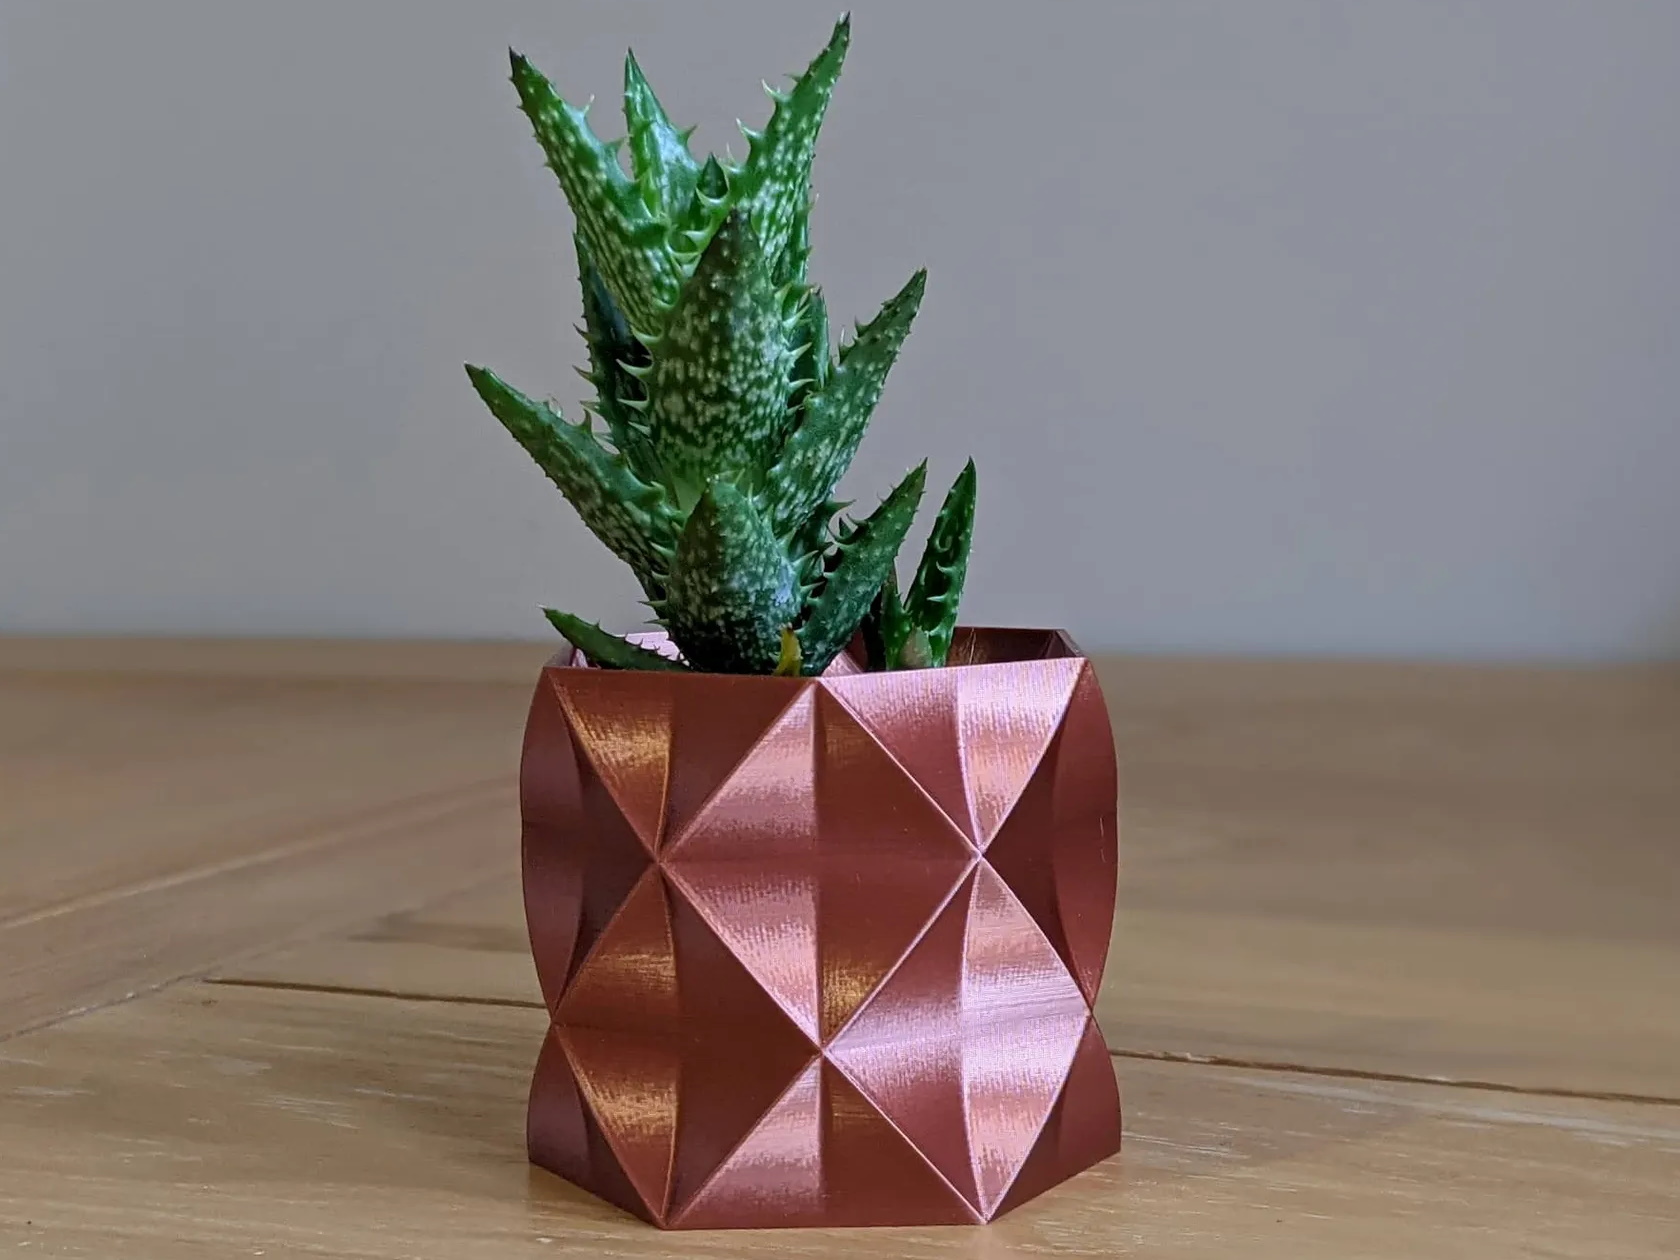 Estantes flotantes de pared inspirados en el origami con